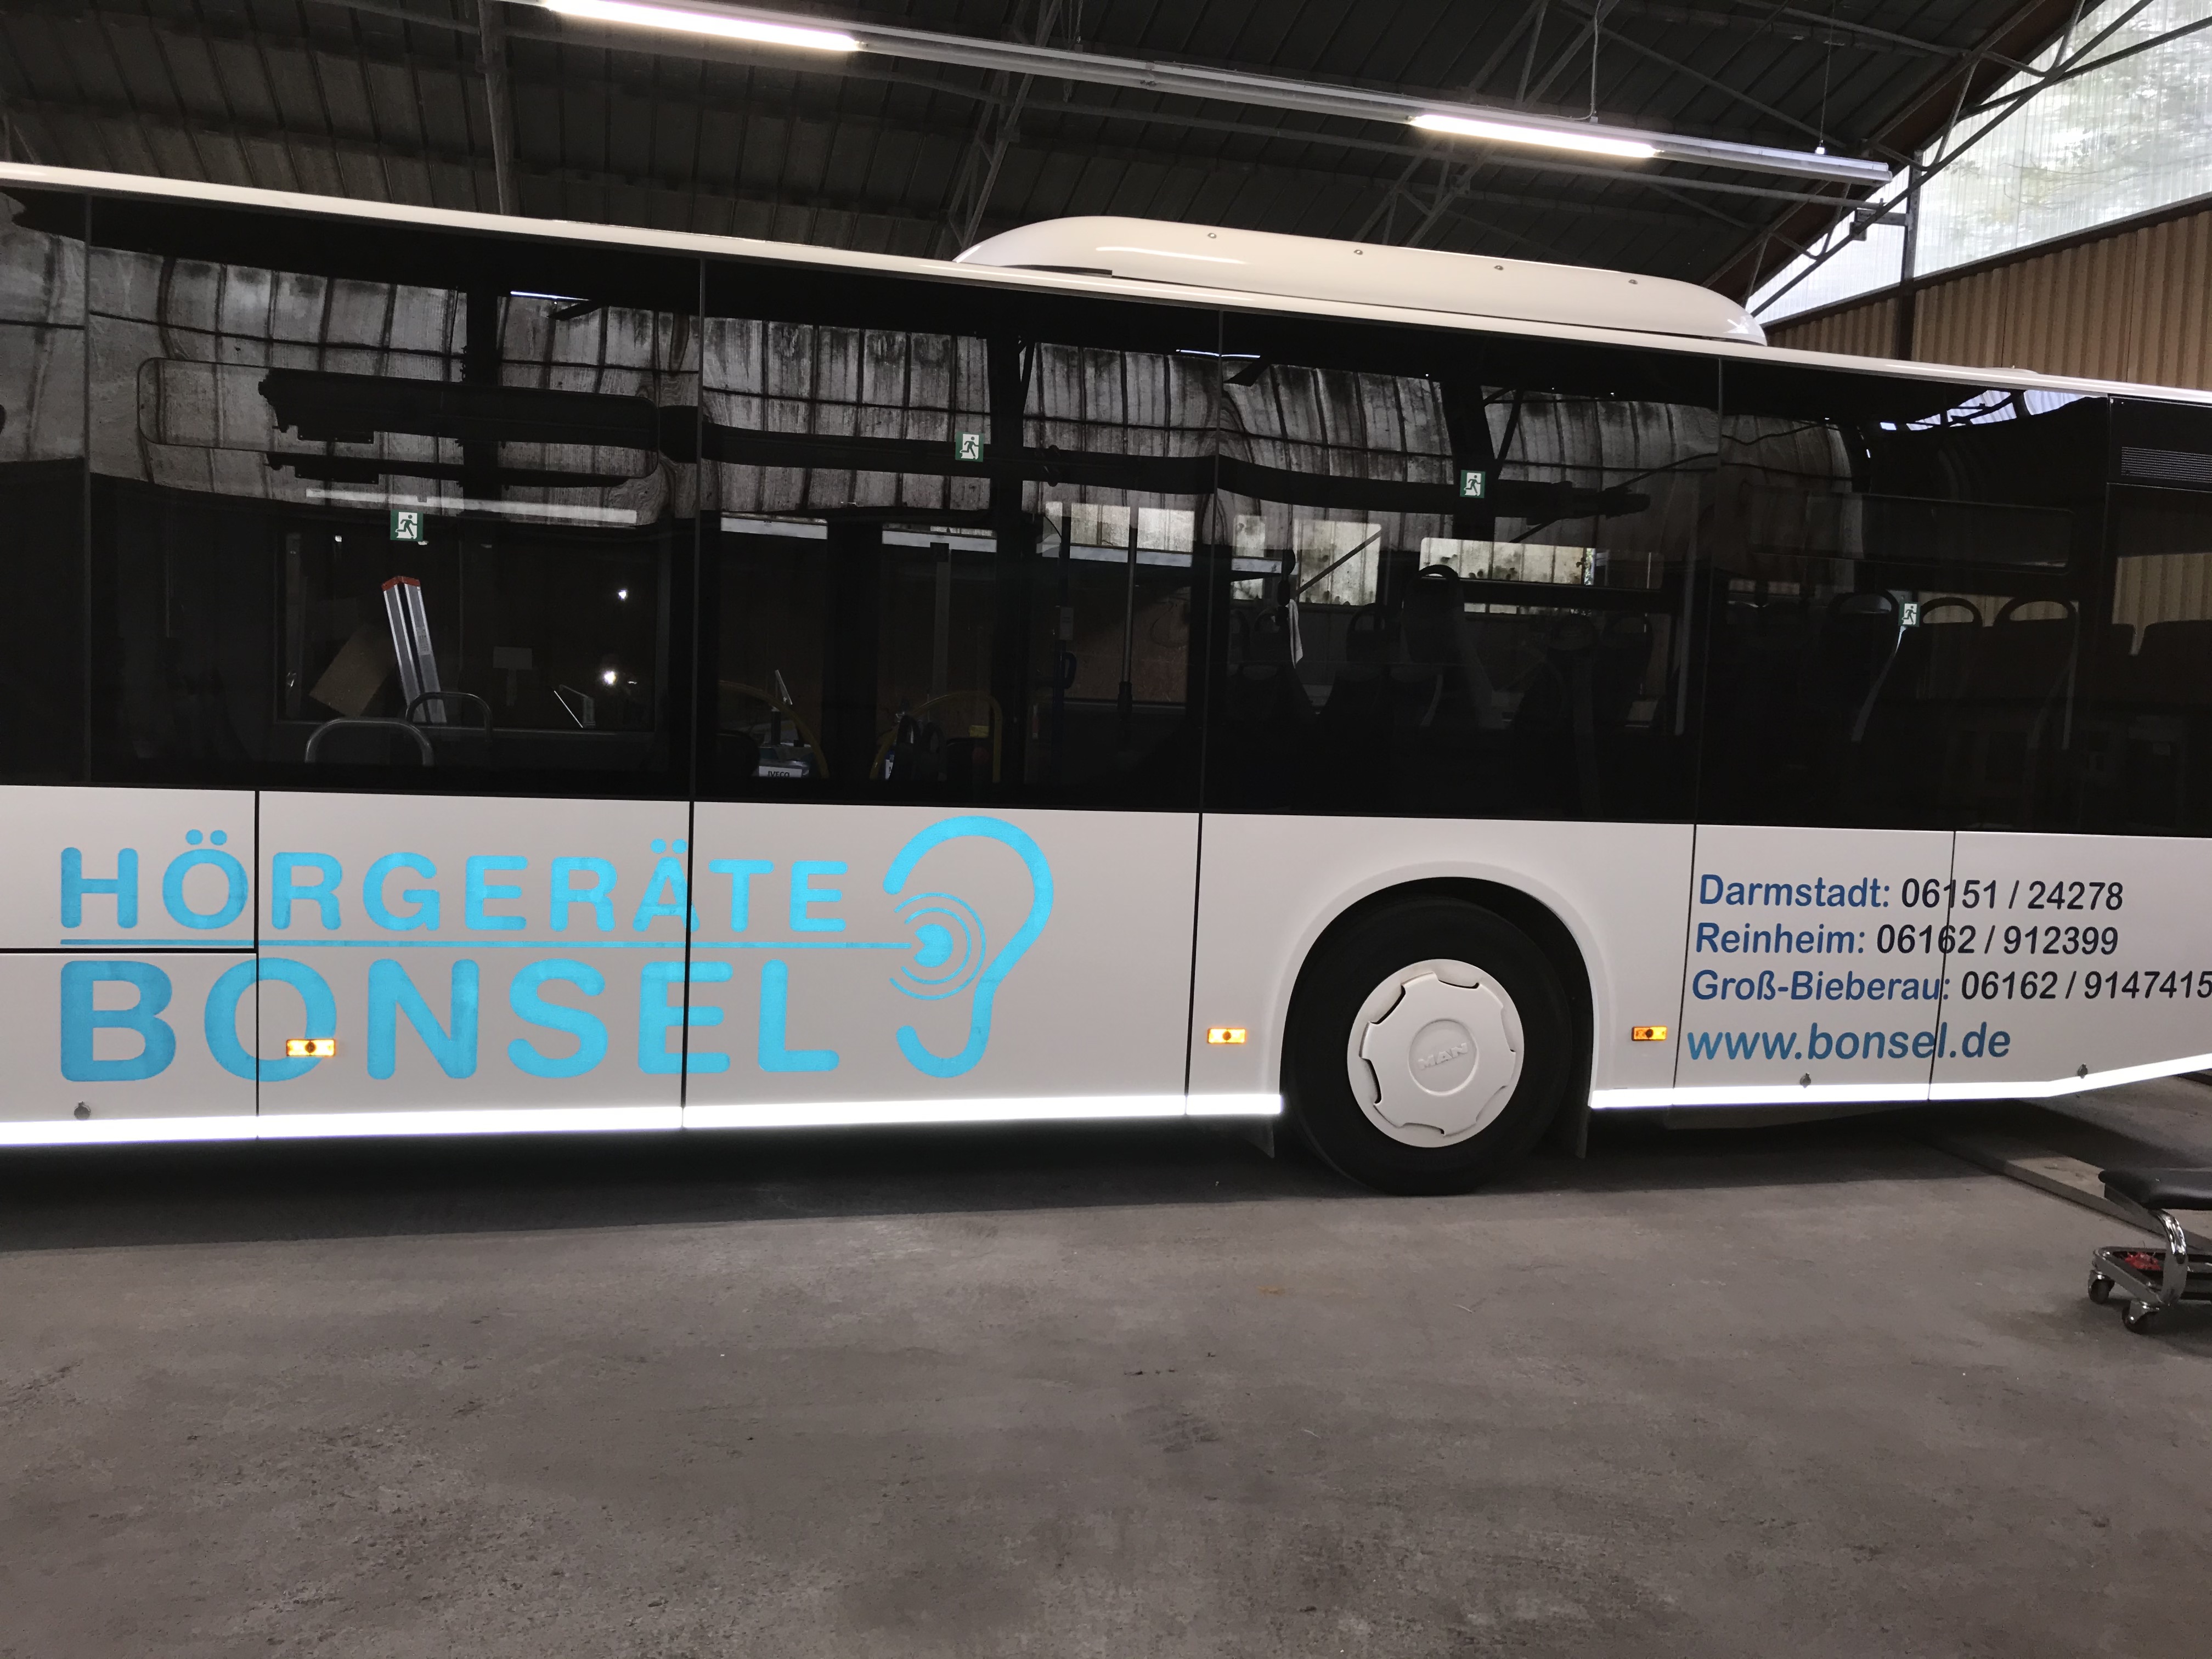 Buswerbung - Leuchtbus - Bonsel - Darmstadt - Tageslicht Reflexion